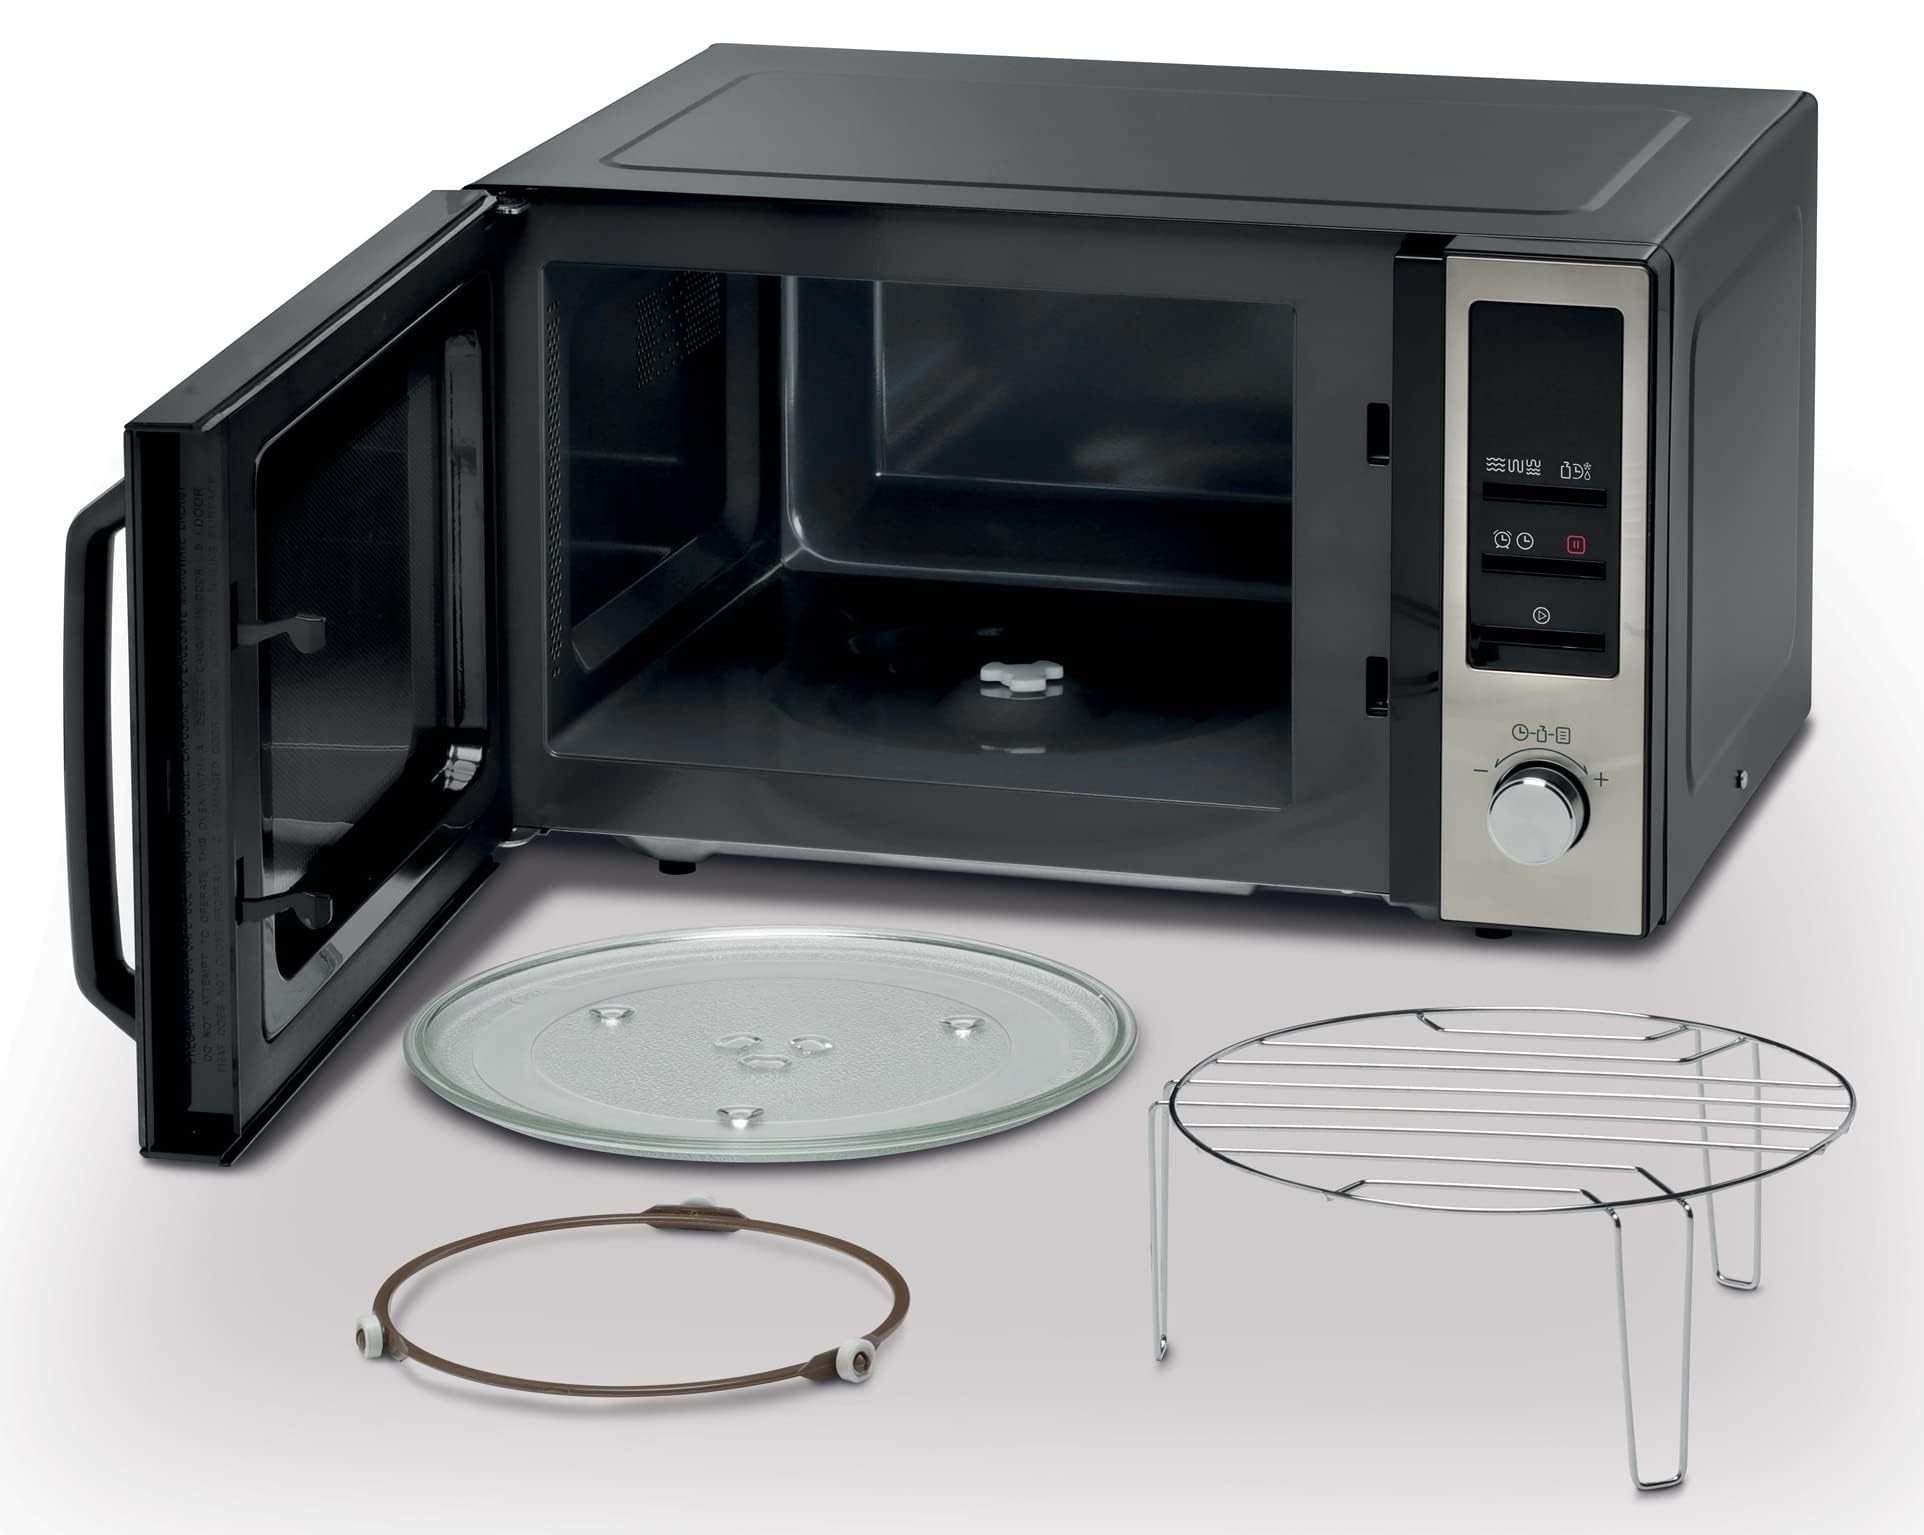 KENWOOD 25L Microwave Oven with Grill, Digital Display, فرن ميكروويف 25 لتر من الستانلس ستيل مع شواية من كينوود مزود بشاشة رقمية